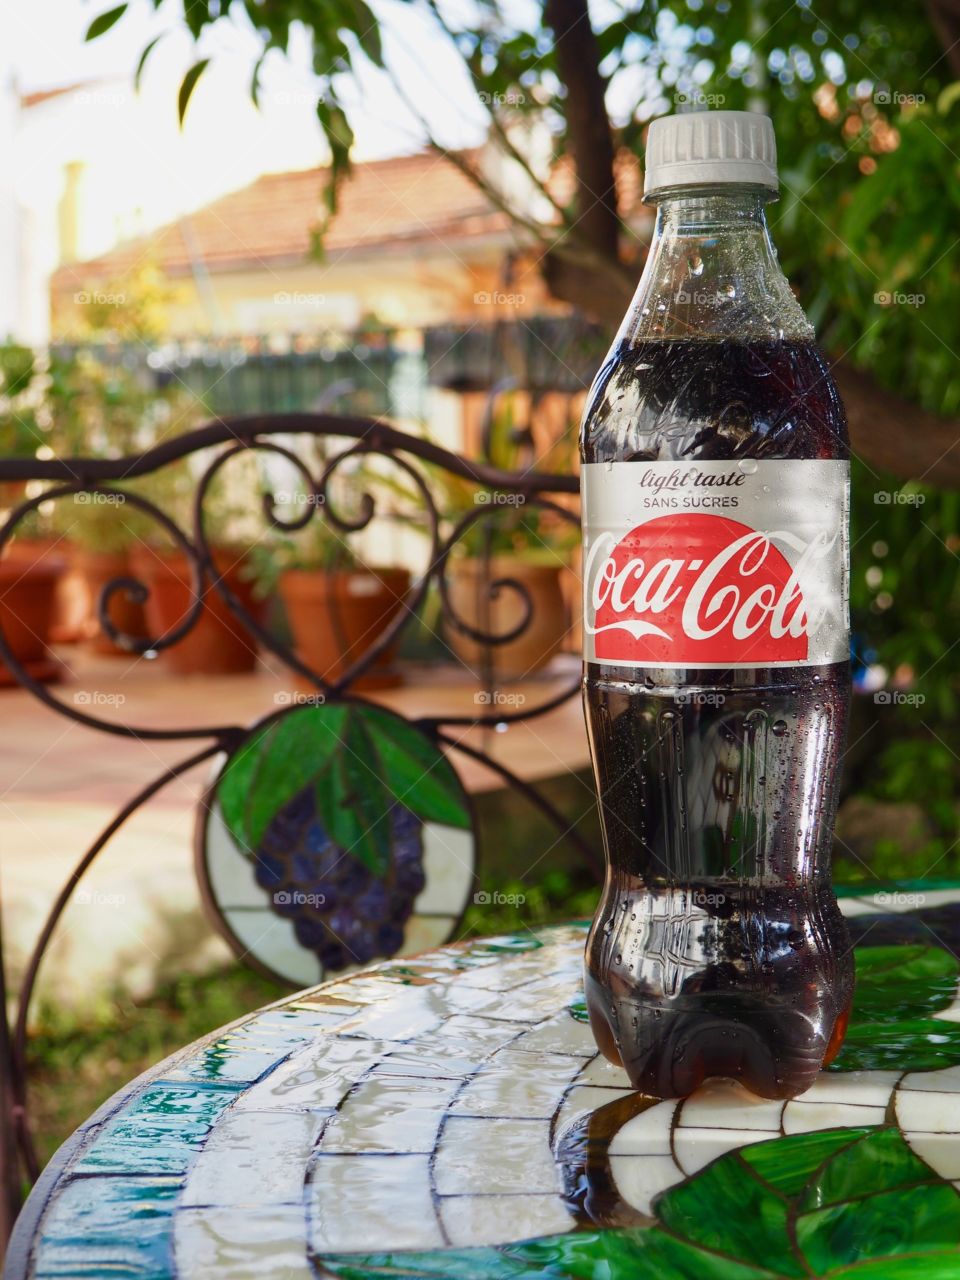 Diet Coke bottle on garden table.